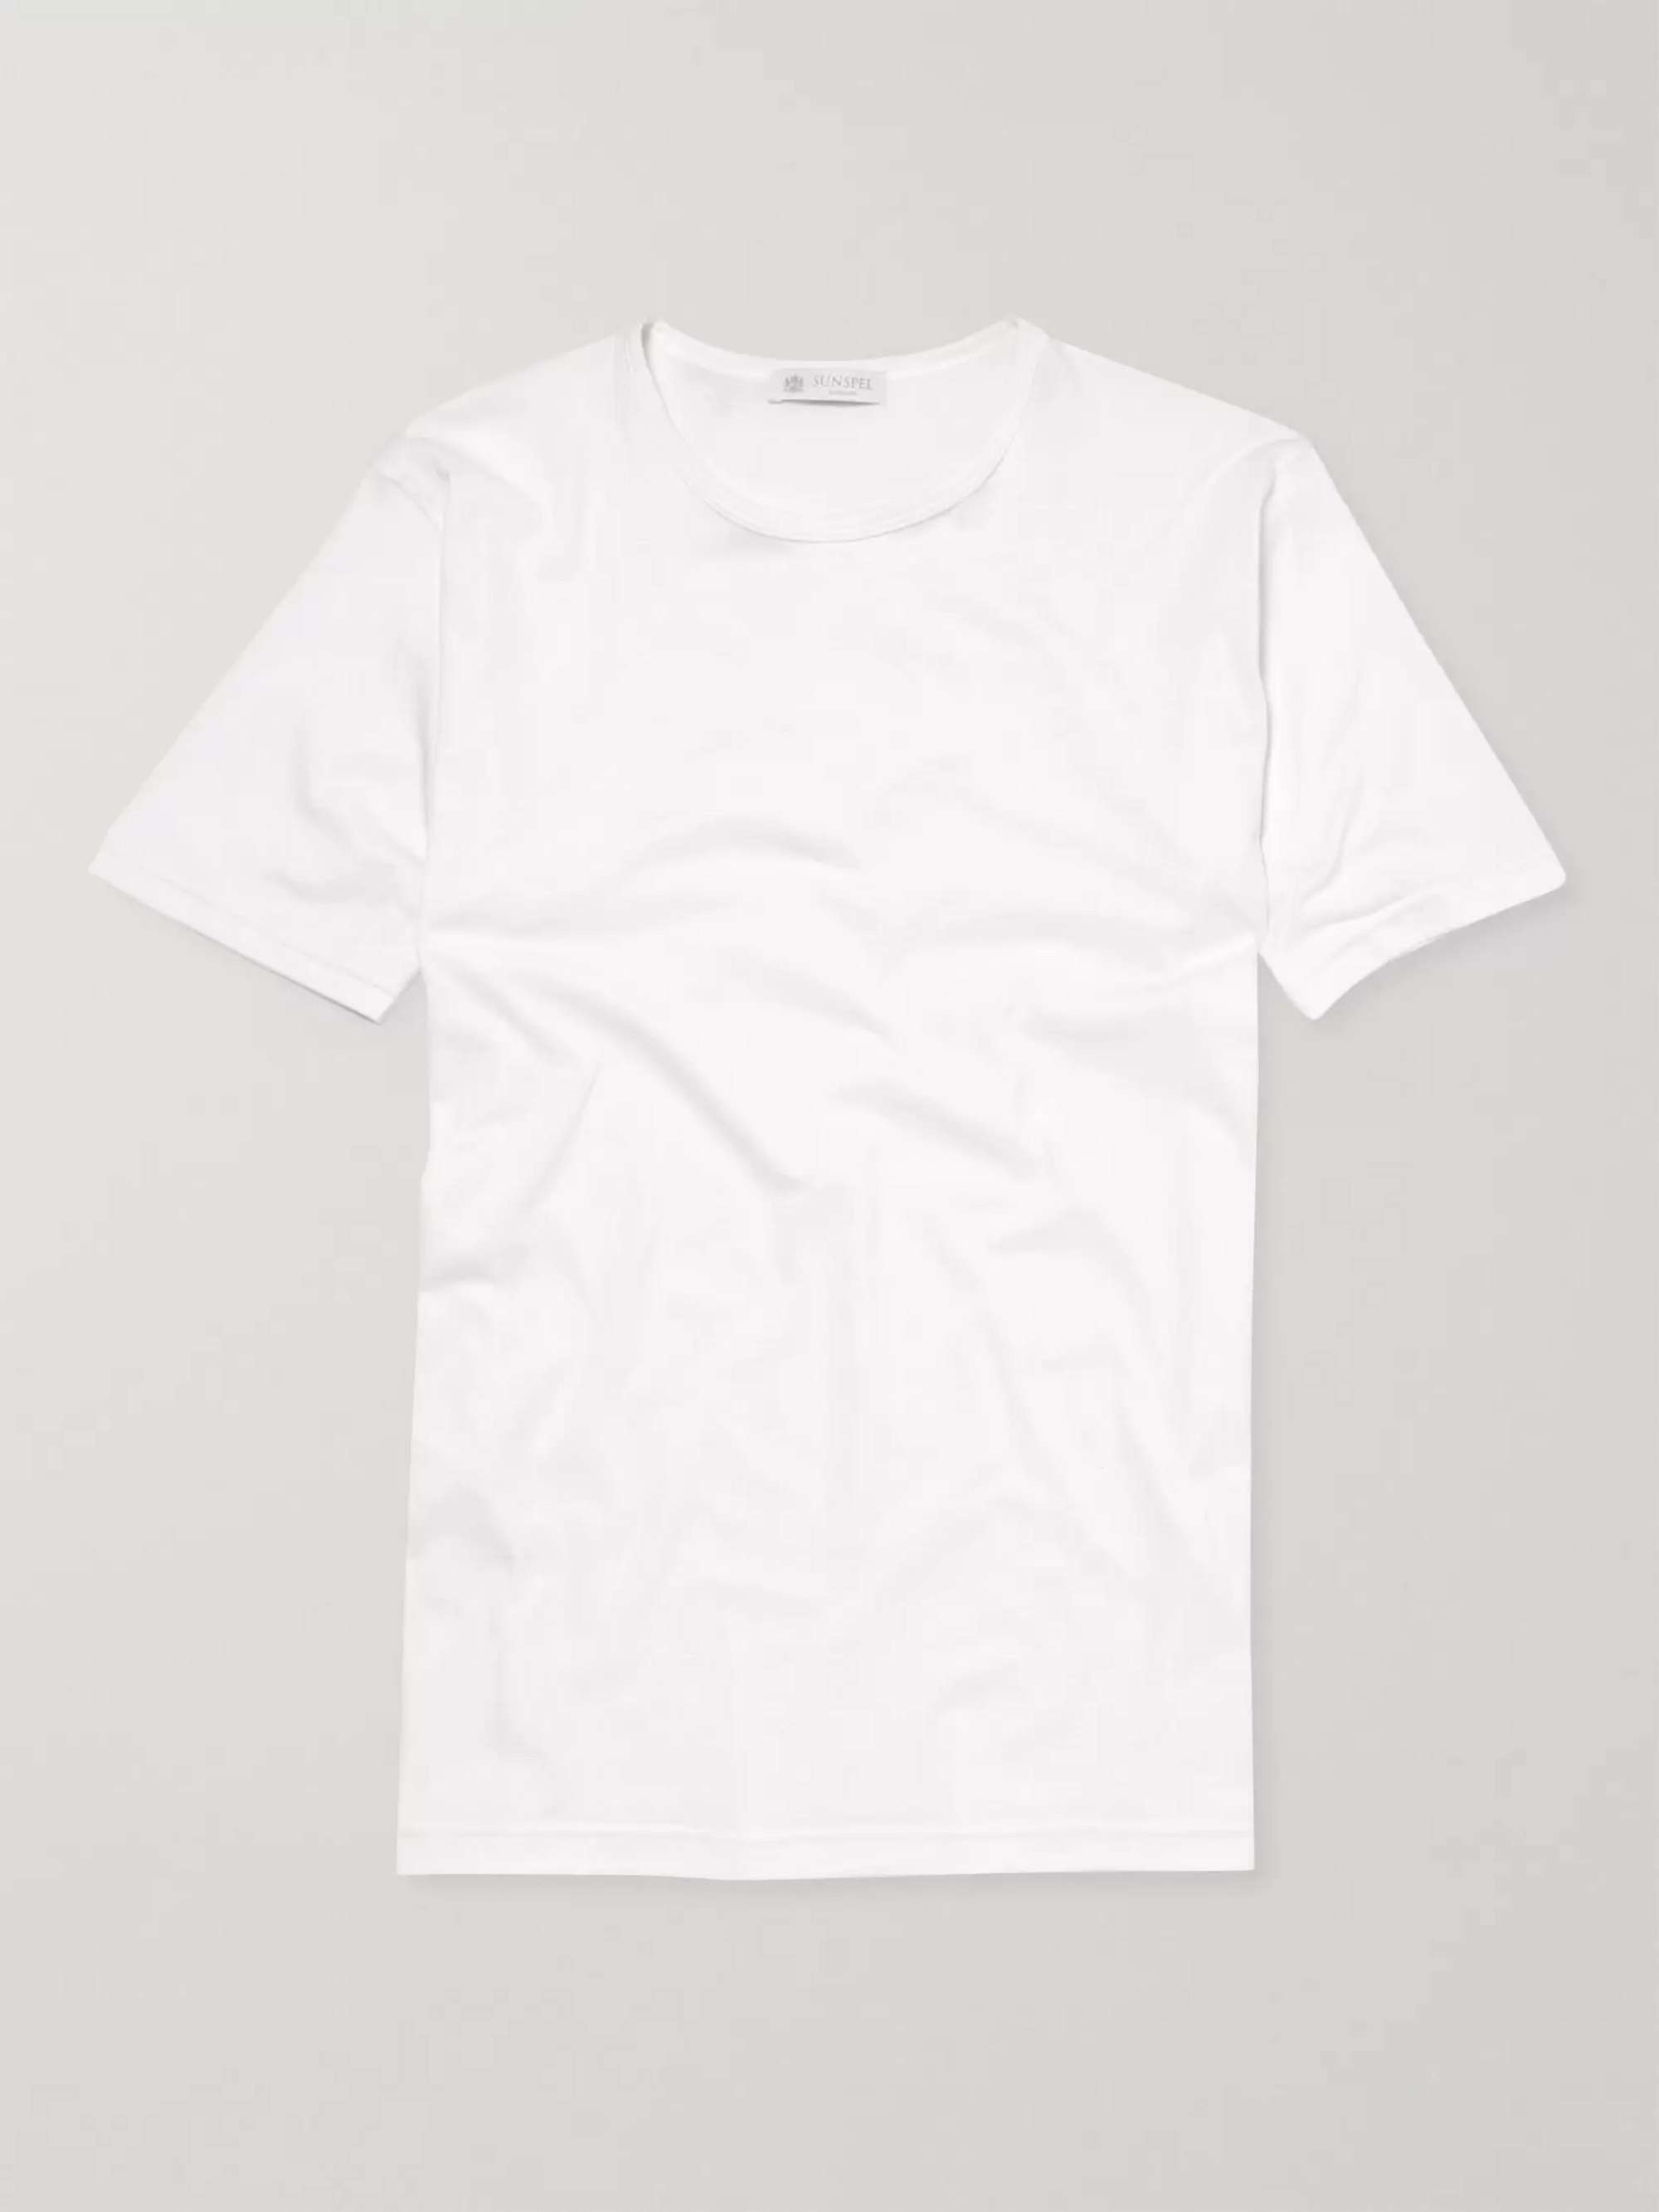 SUNSPEL Superfine Cotton Underwear T-Shirt